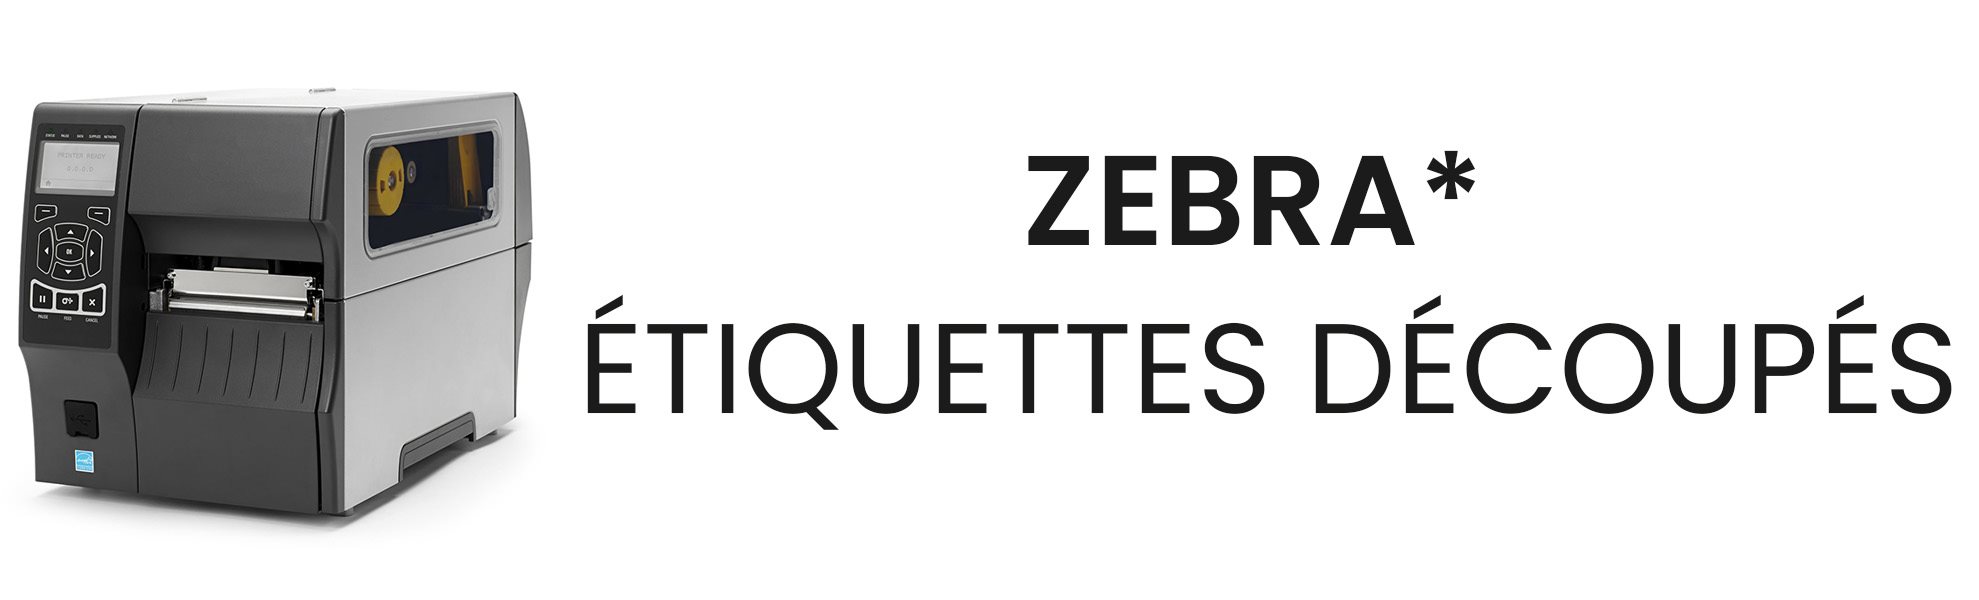 Zebra-etiquette